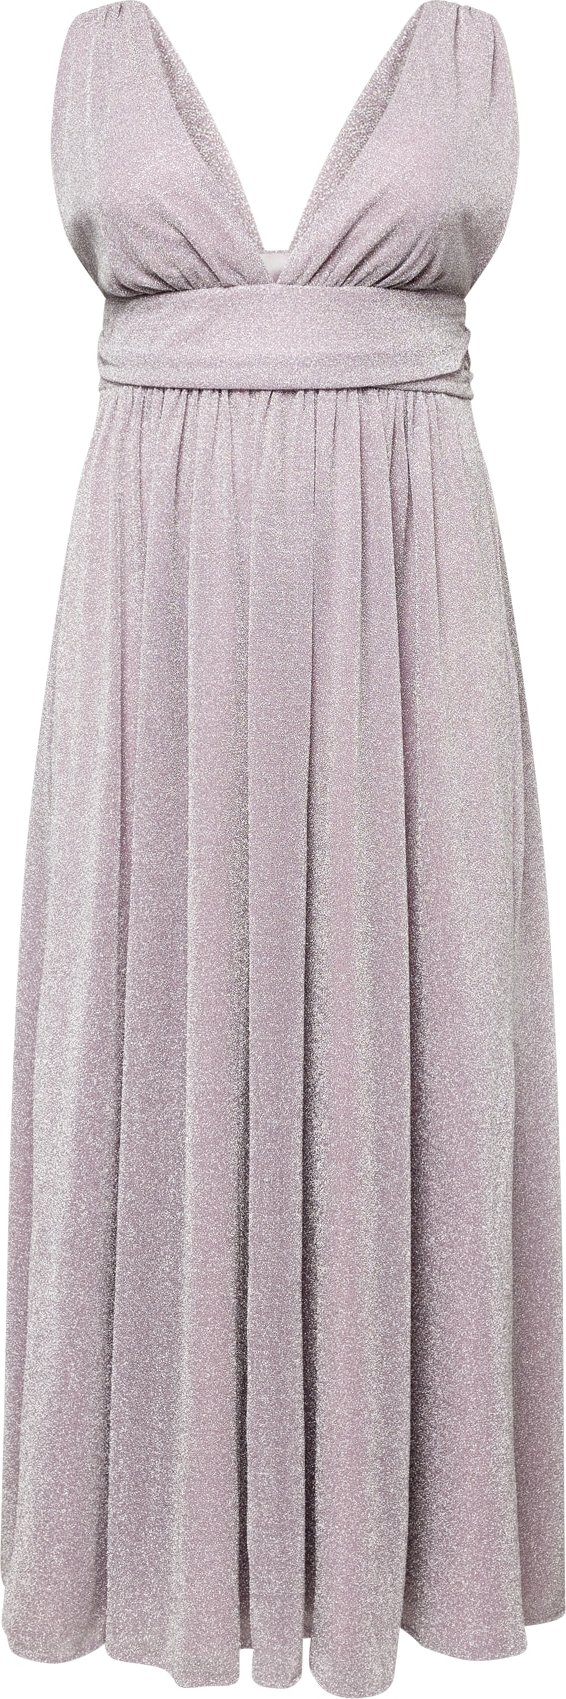 Společenské šaty SWING Curve pastelová fialová